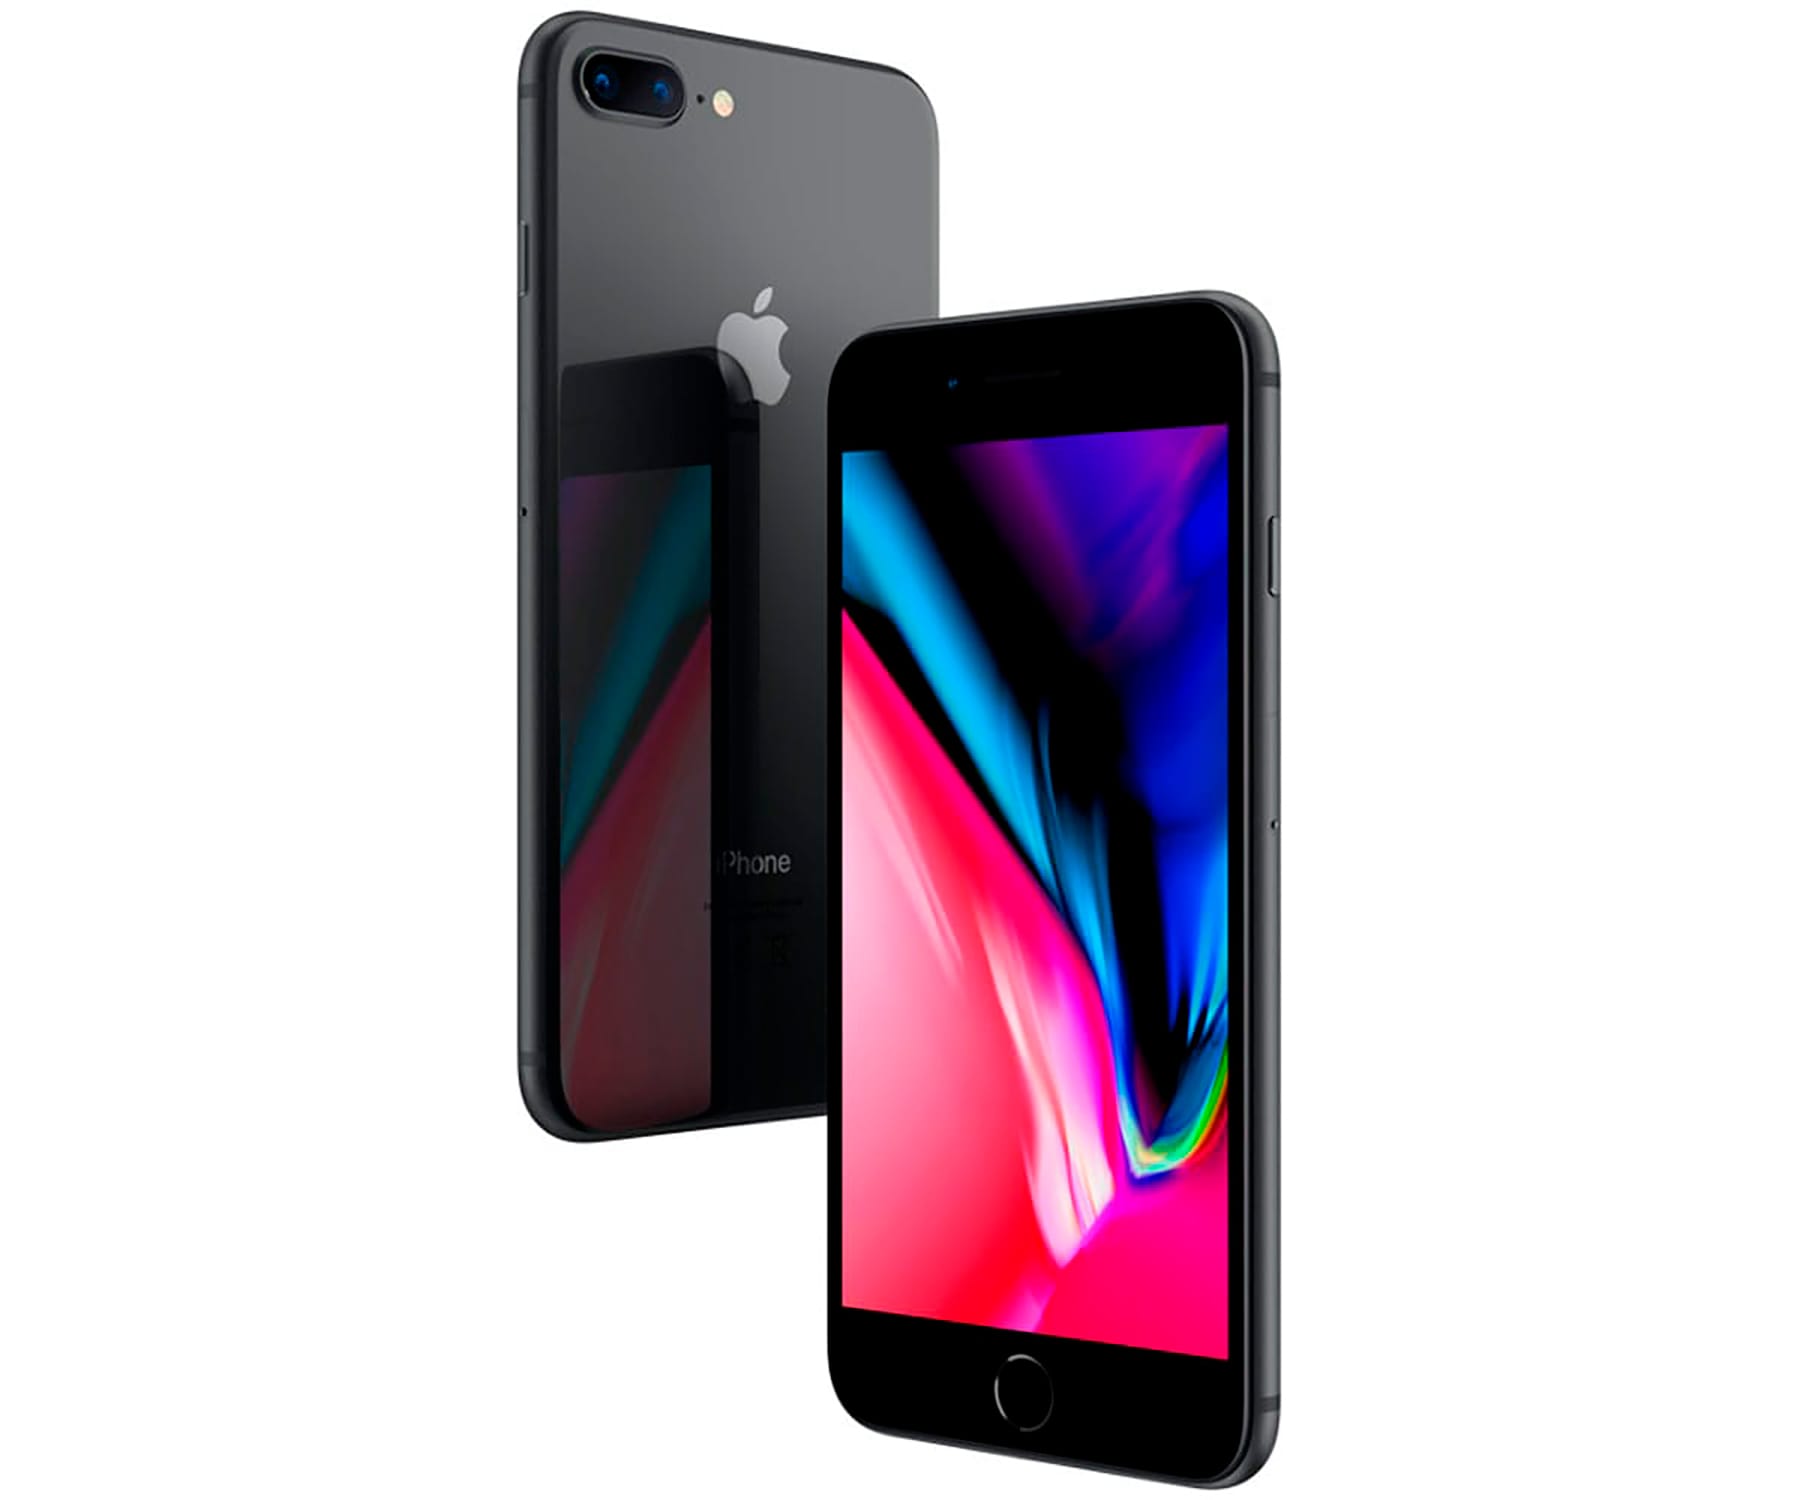 Apple iPhone 8 Plus Reacondicionado (CPO) Gris (Space grey) 3+64GB / 5.5"